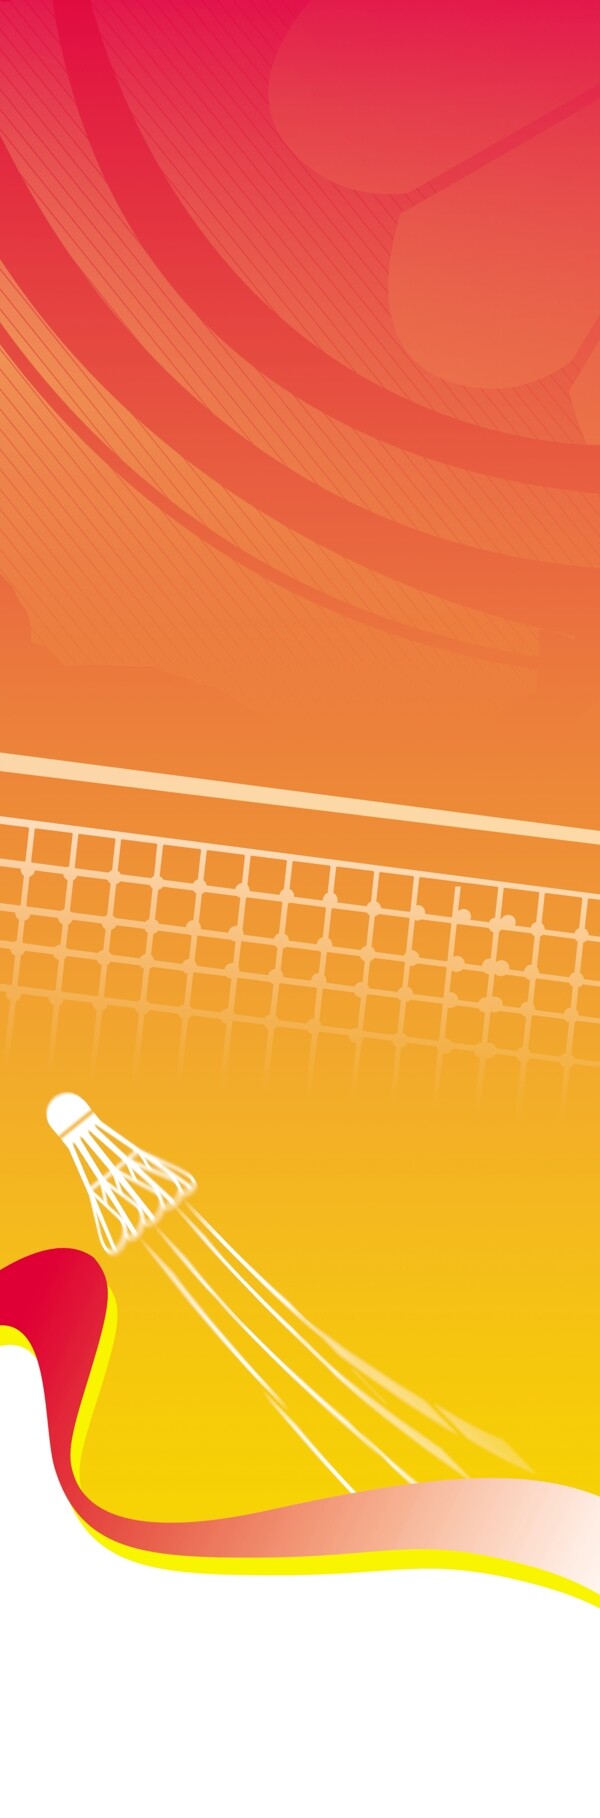 羽毛球展架易拉宝海报橙色背景